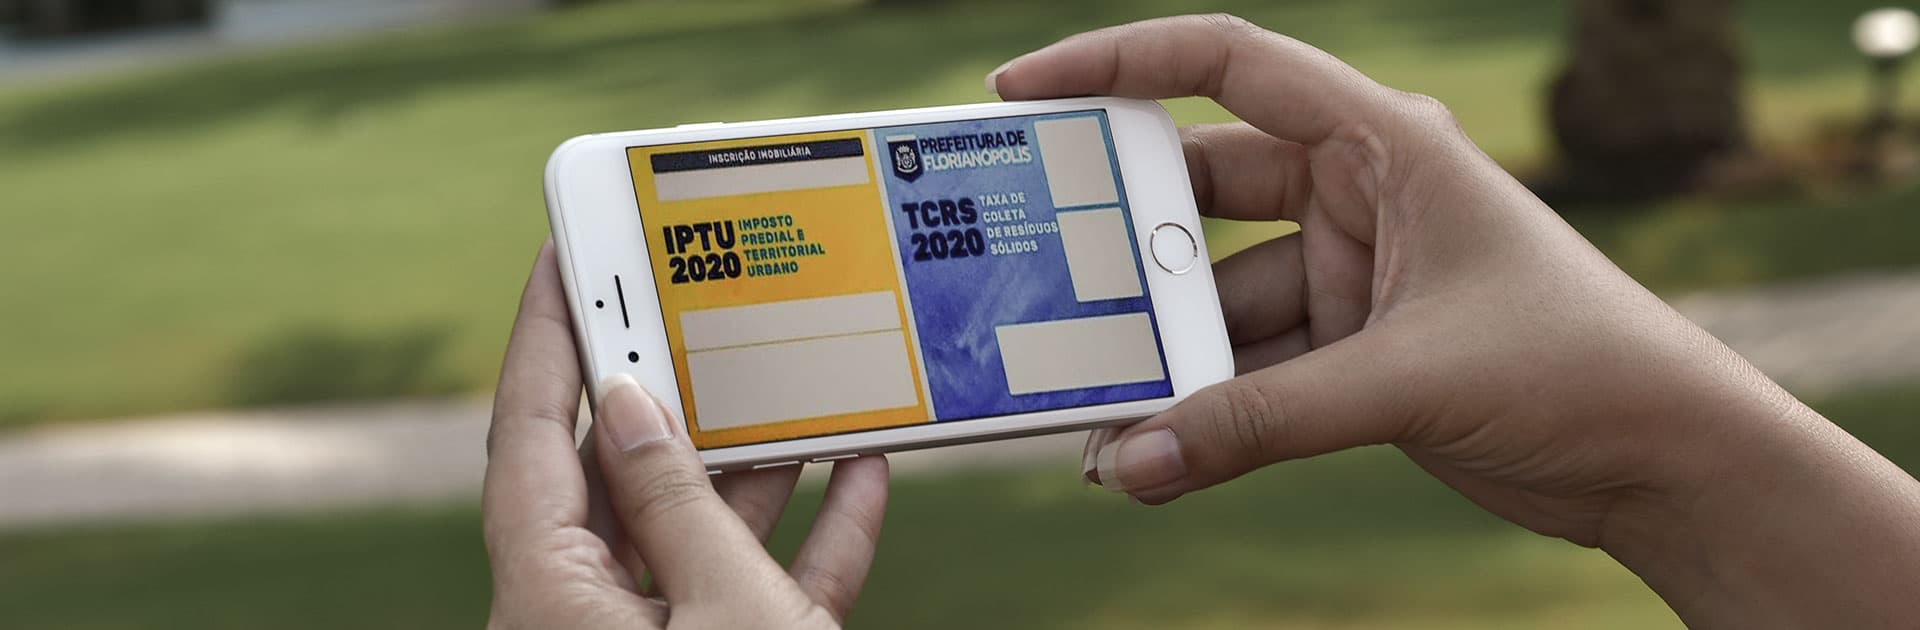 Carnês de IPTU virtual já estão disponíveis em Florianópolis | NDMais